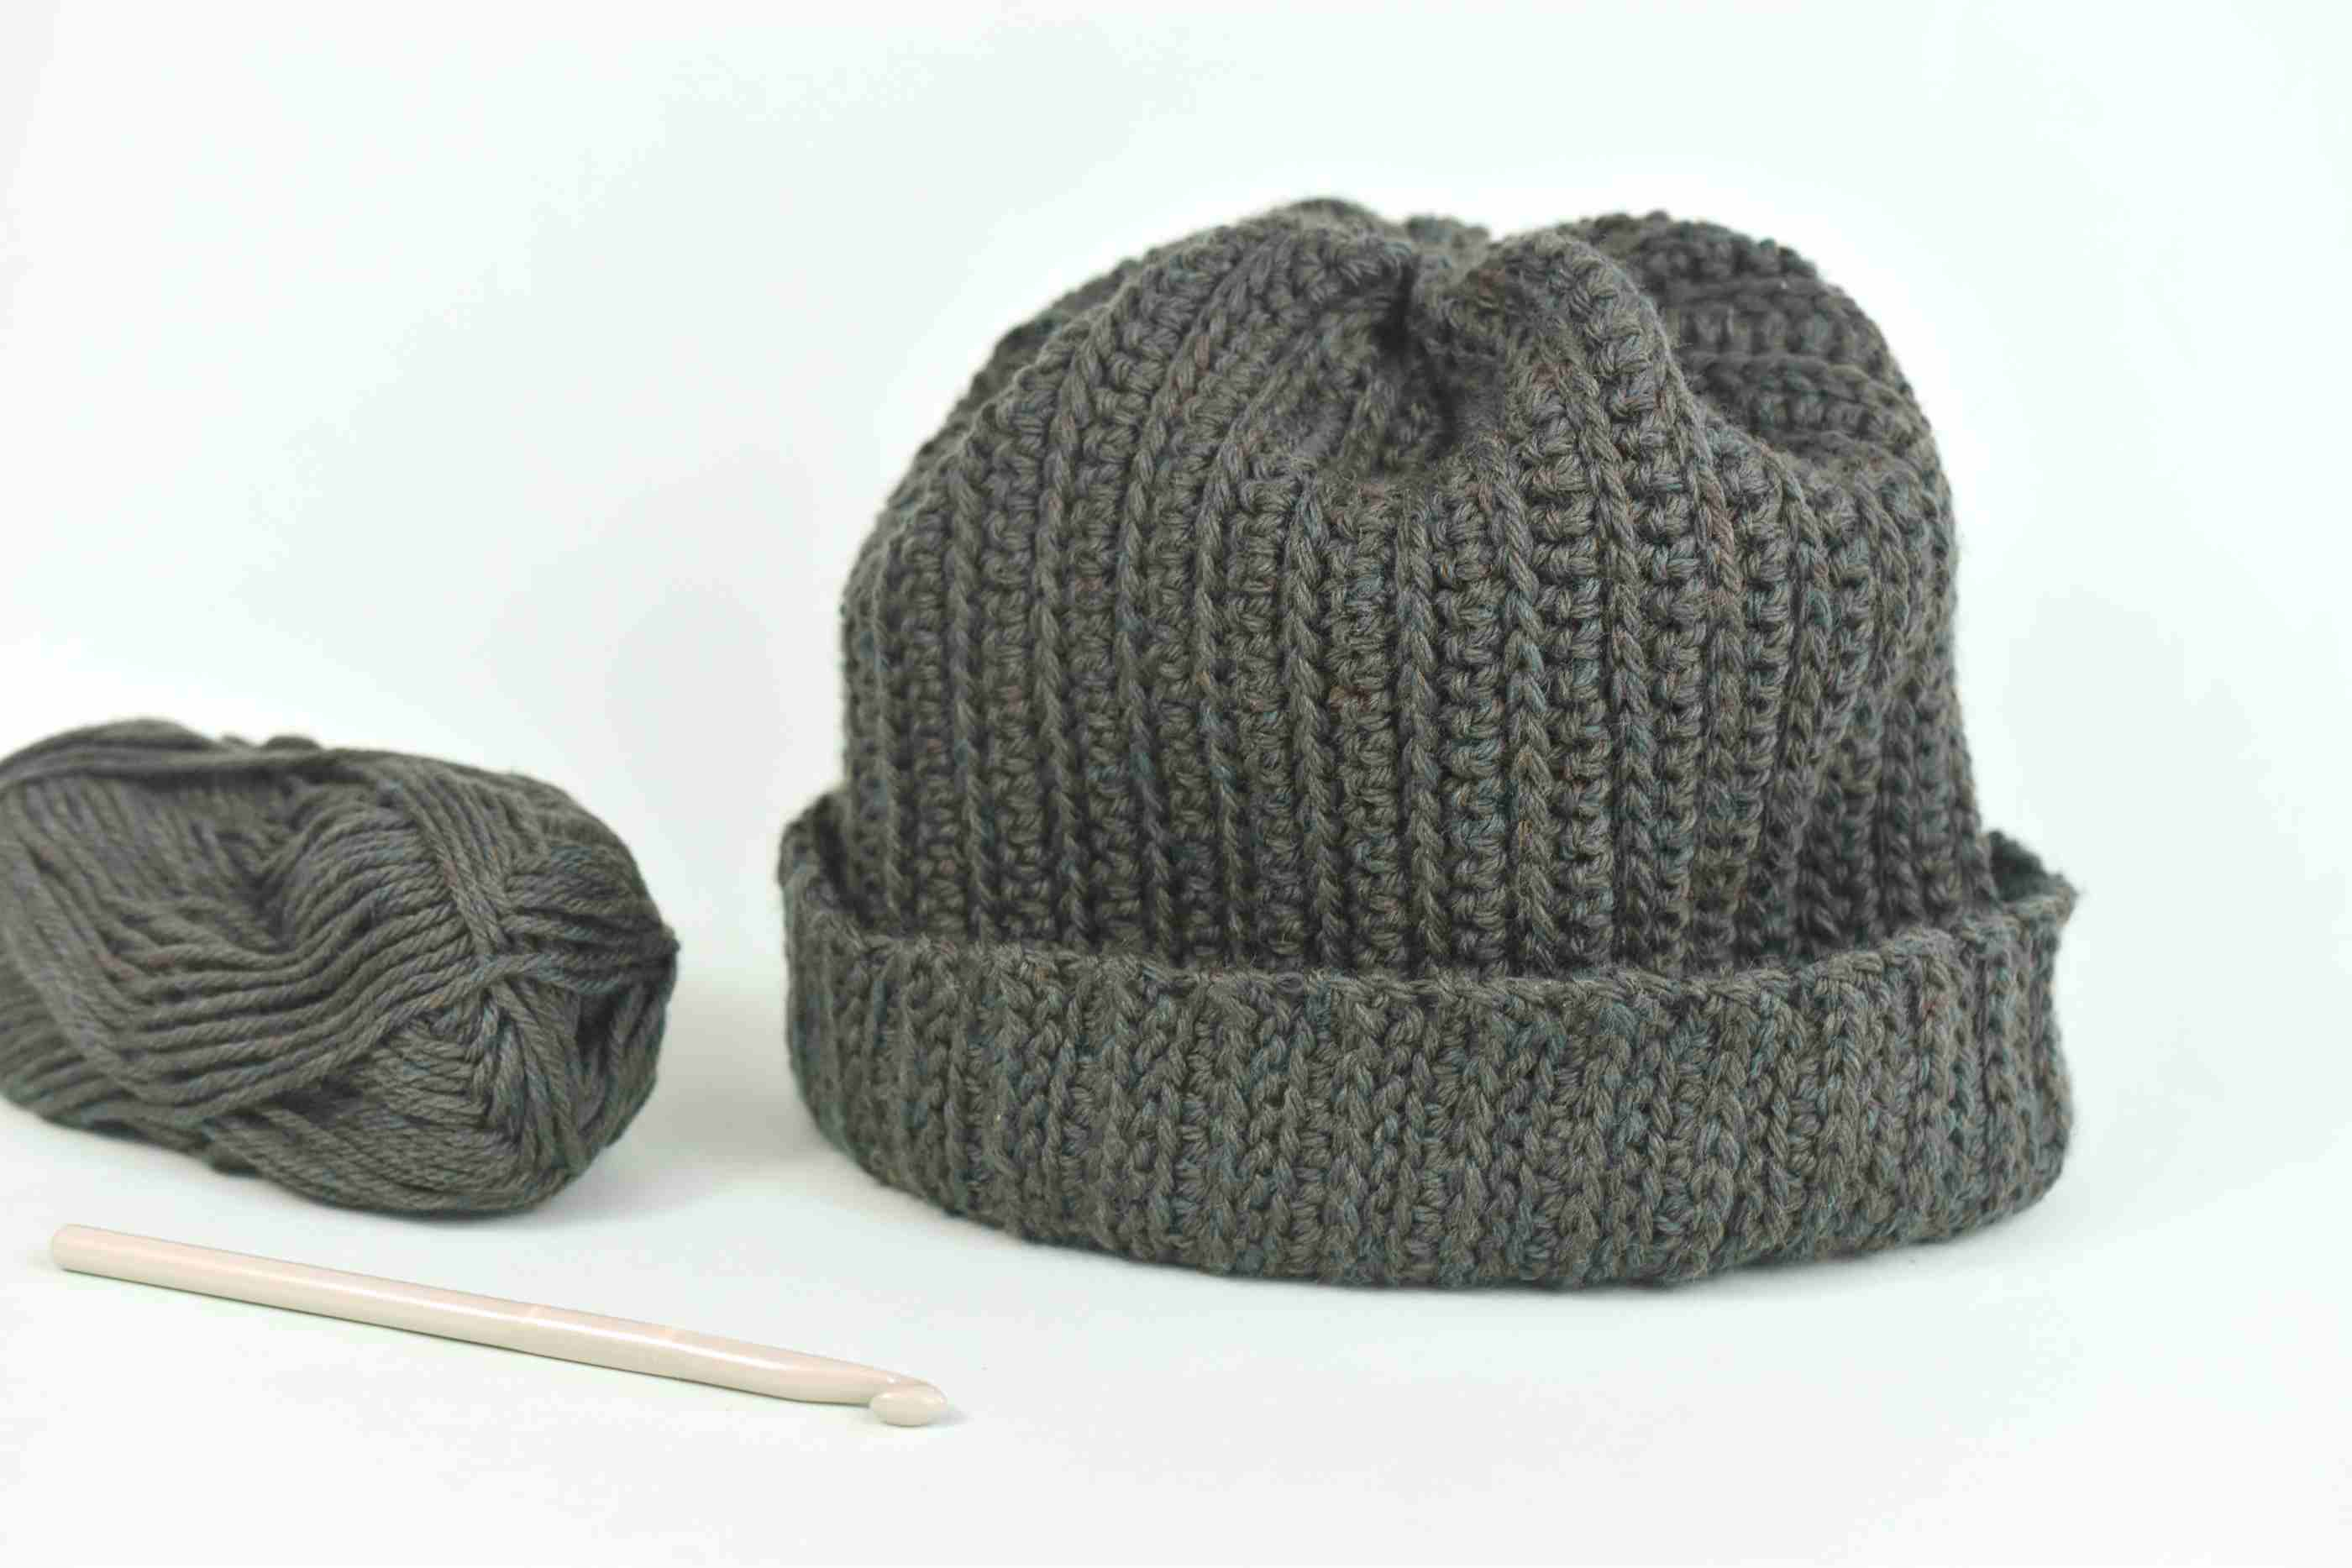 Crochet Winter Hat Free Pattern Free Mens Crochet Hat Pattern